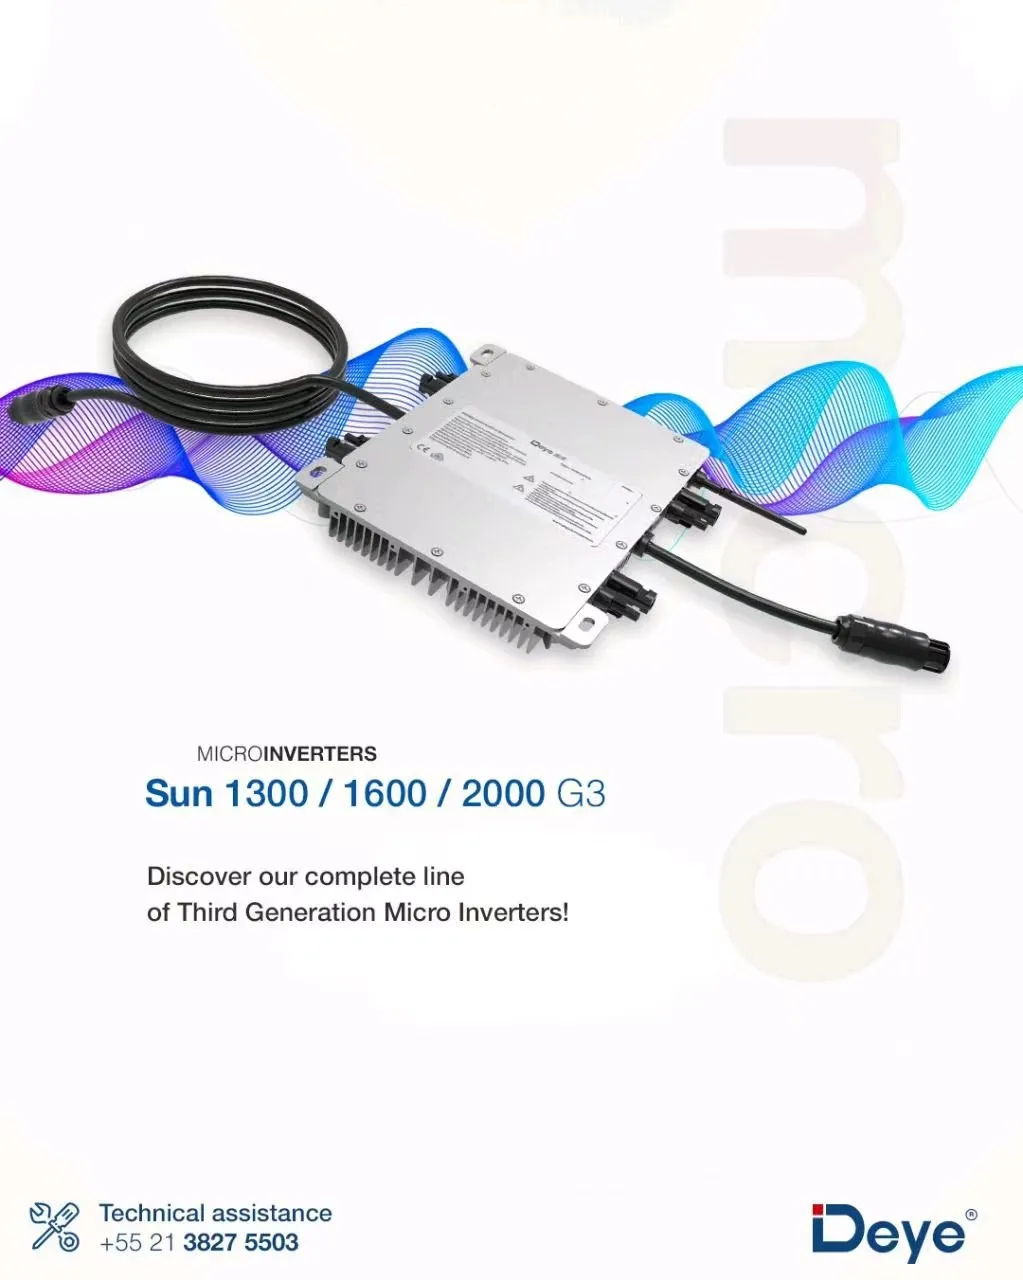 deye SUN1300/1600/2000 G3-EU-230 10 Years Warranty Waterproof Solar Micro Inverter 400w Enphase Grid Tie Micro Inverter